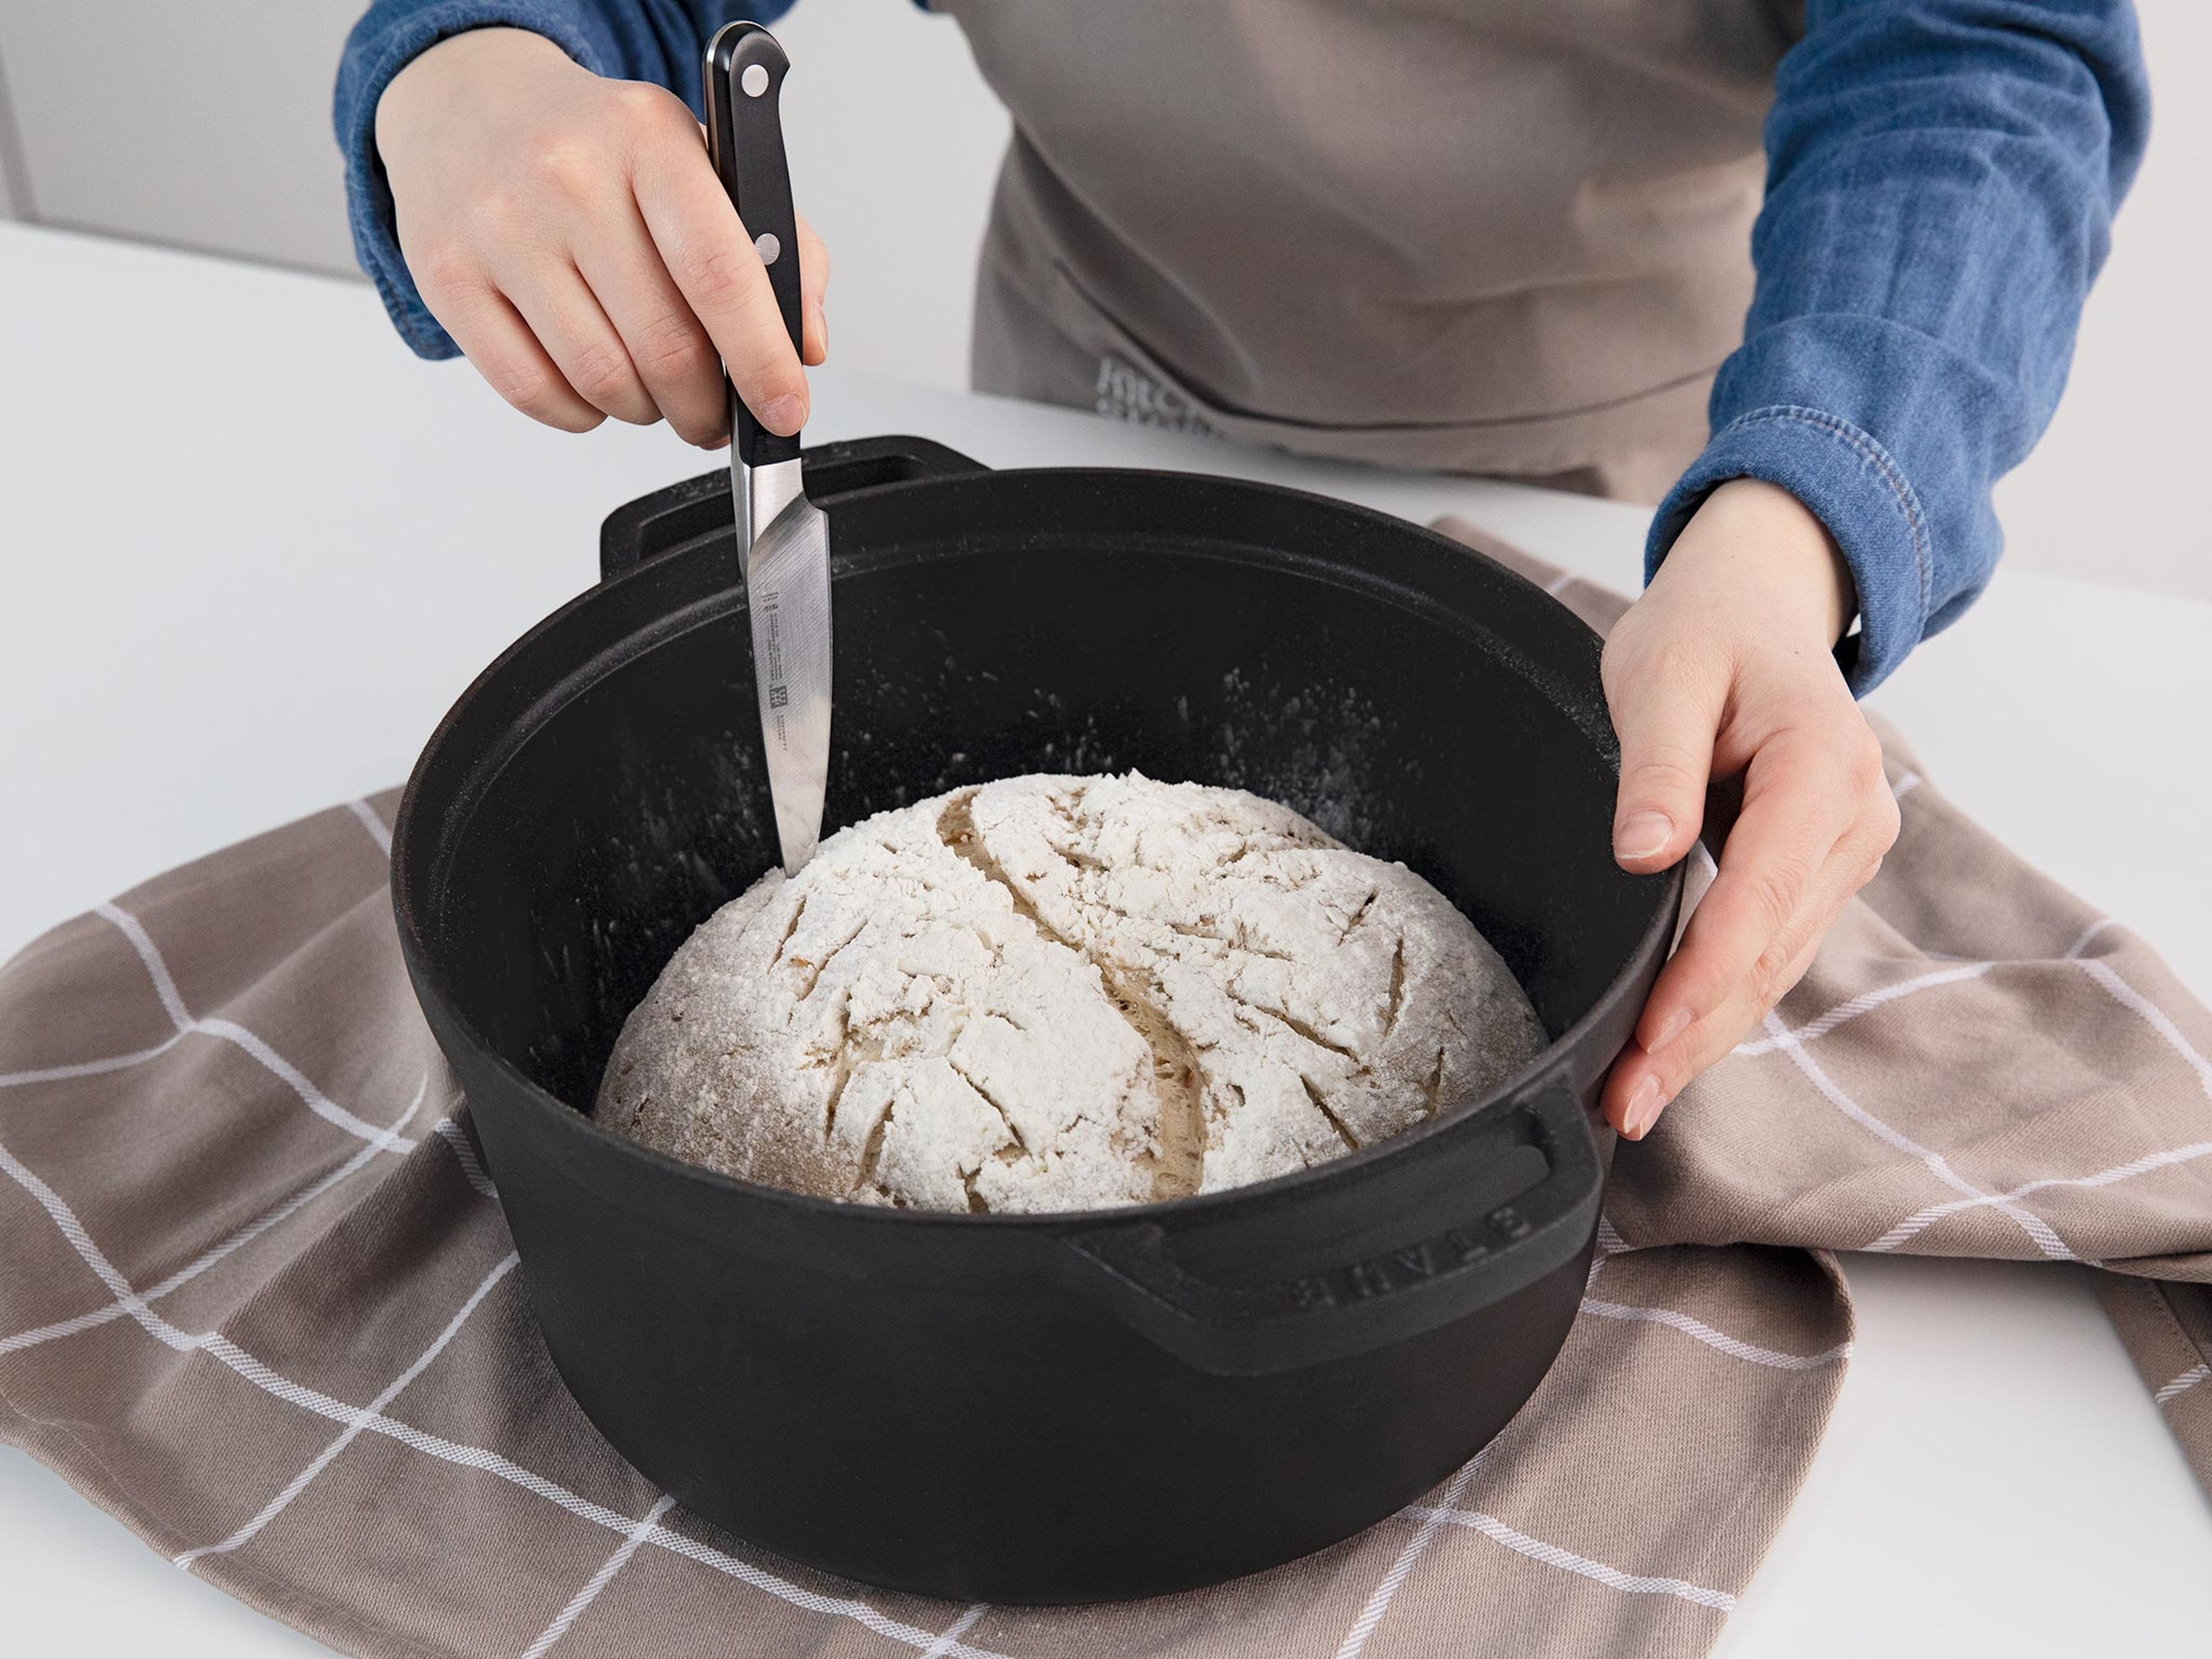 Um das gegangene und geformte Brot richtig einzuschneiden, verwende ein kleines, scharfes Messer, eine Rasierklinge oder ein Skalpell. Das Einkerben hilft dem Brot dabei, gleichmäßig und schön aufzugehen, anstatt an den Nähten aufzureißen. Backe das Brot direkt nach dem einschneiden.